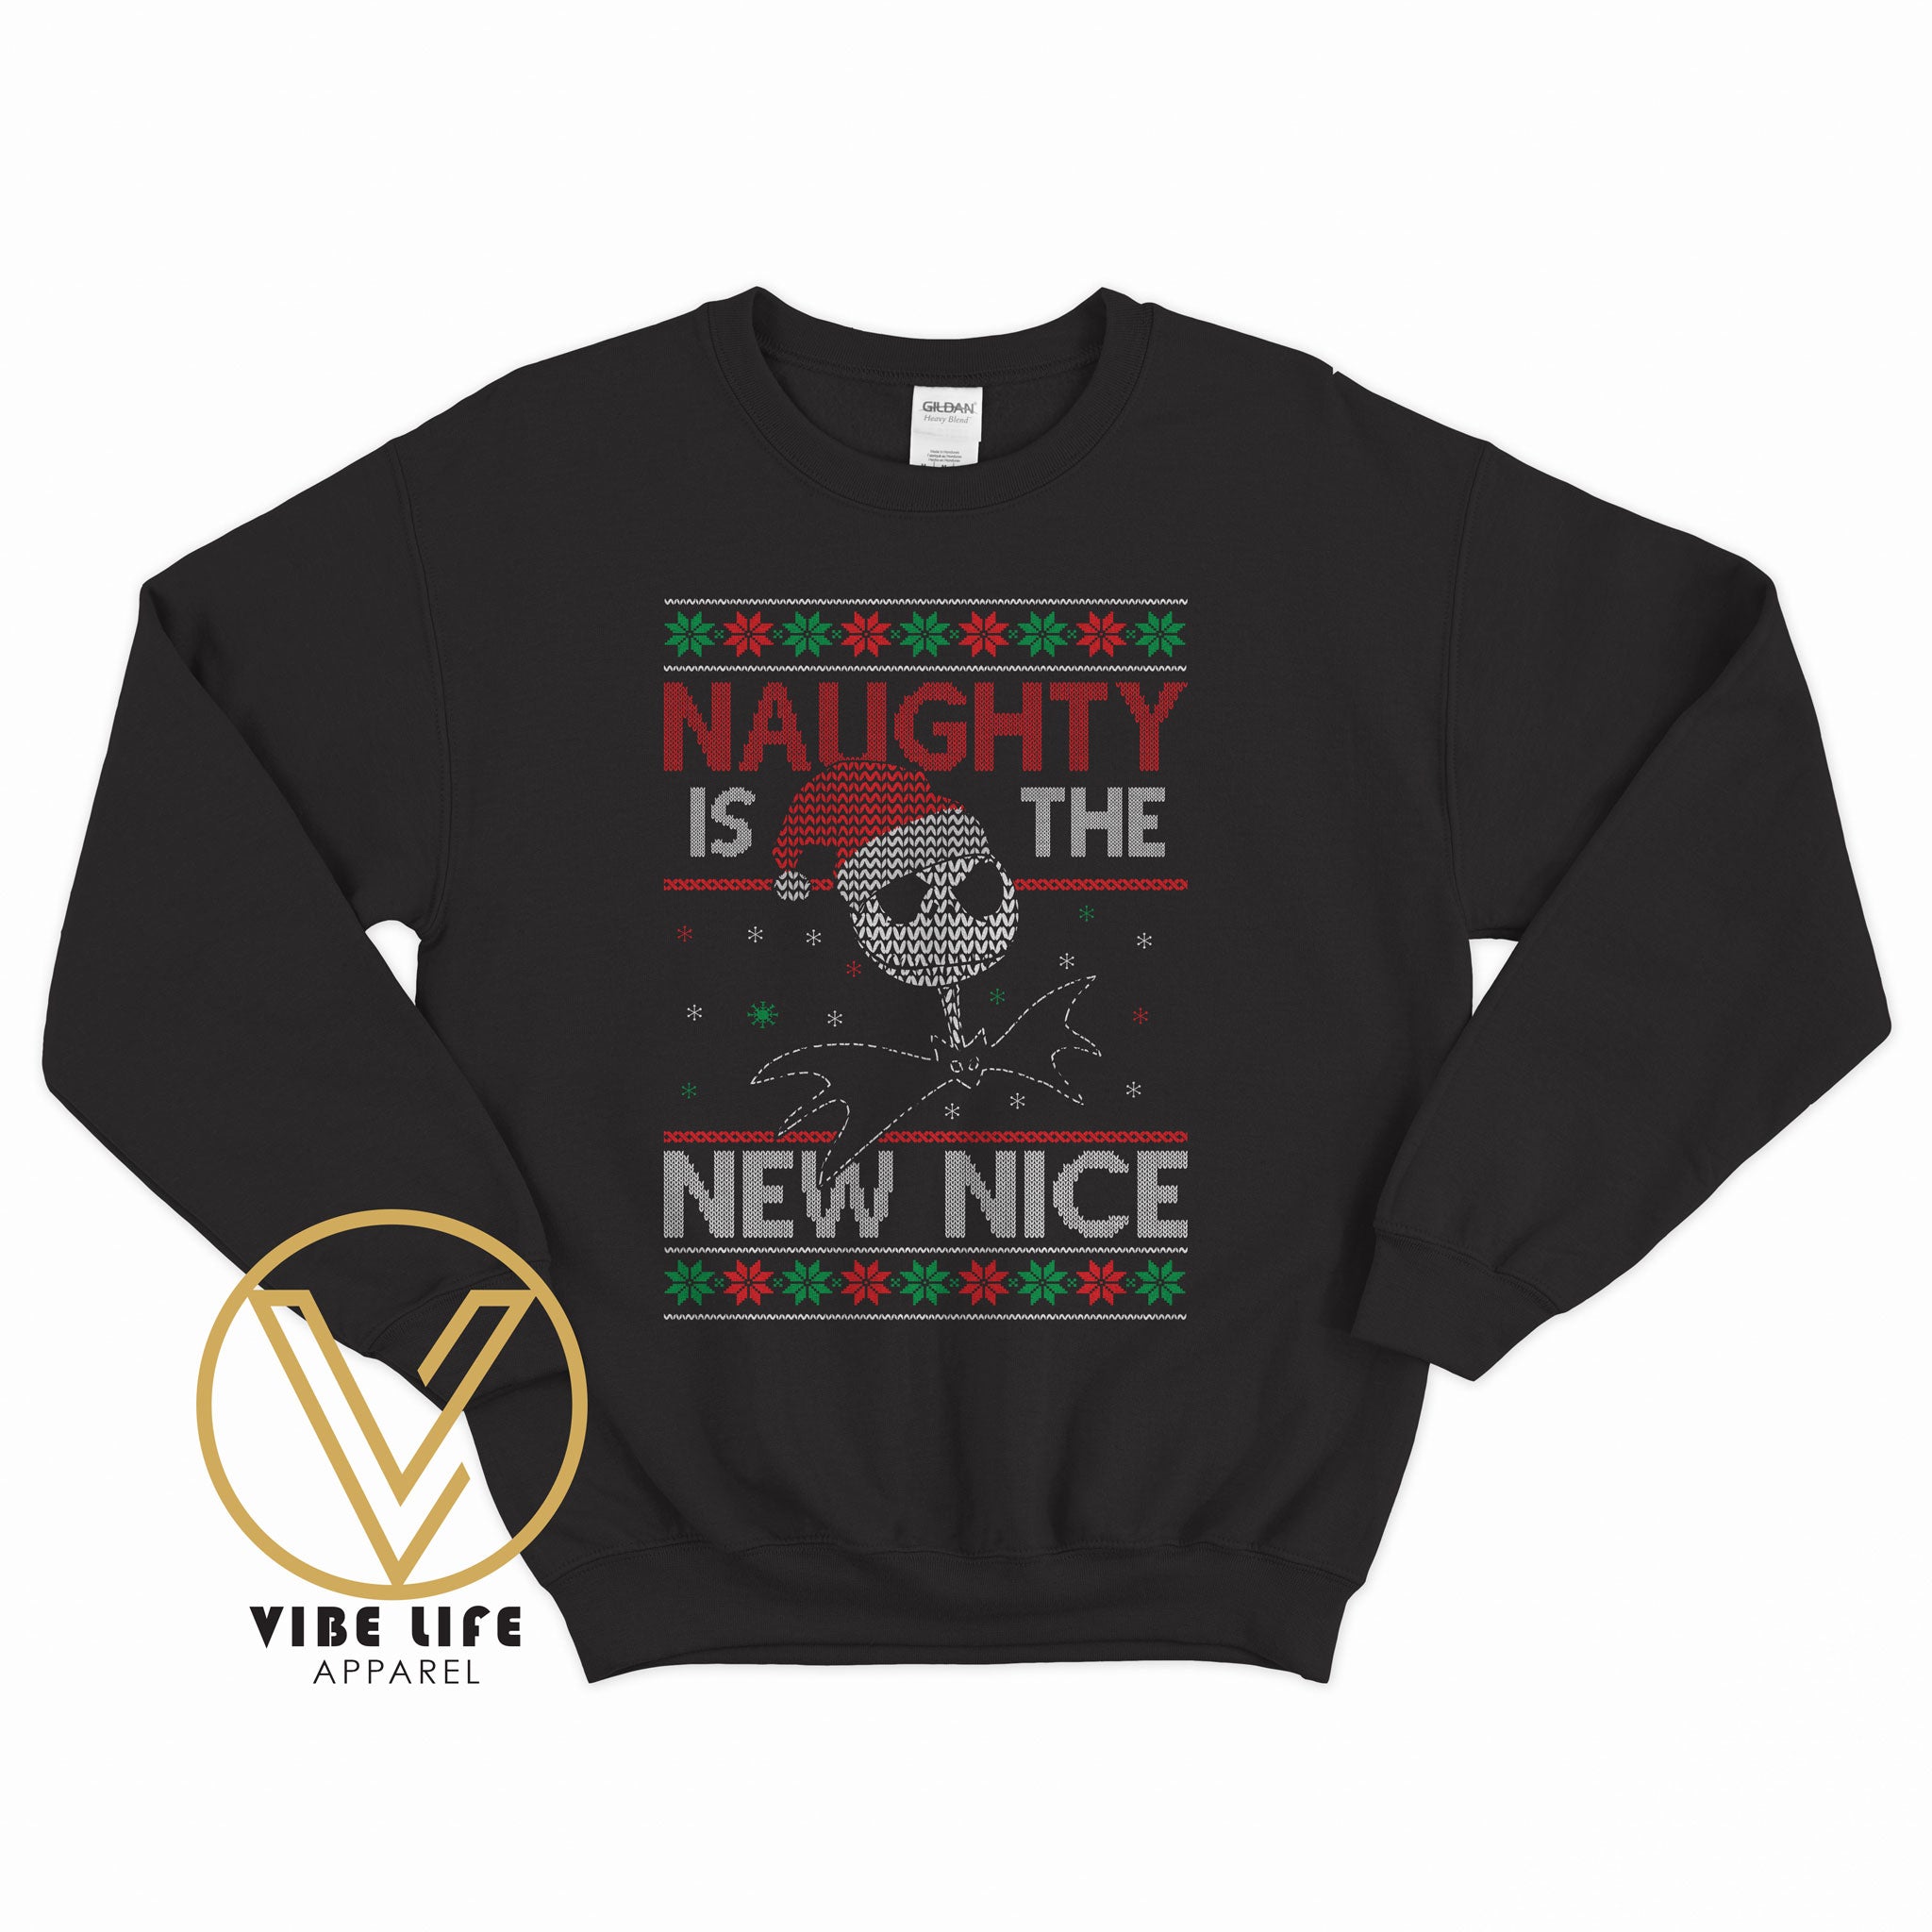 NAUGHTY is the new NICE - Sweatshirt